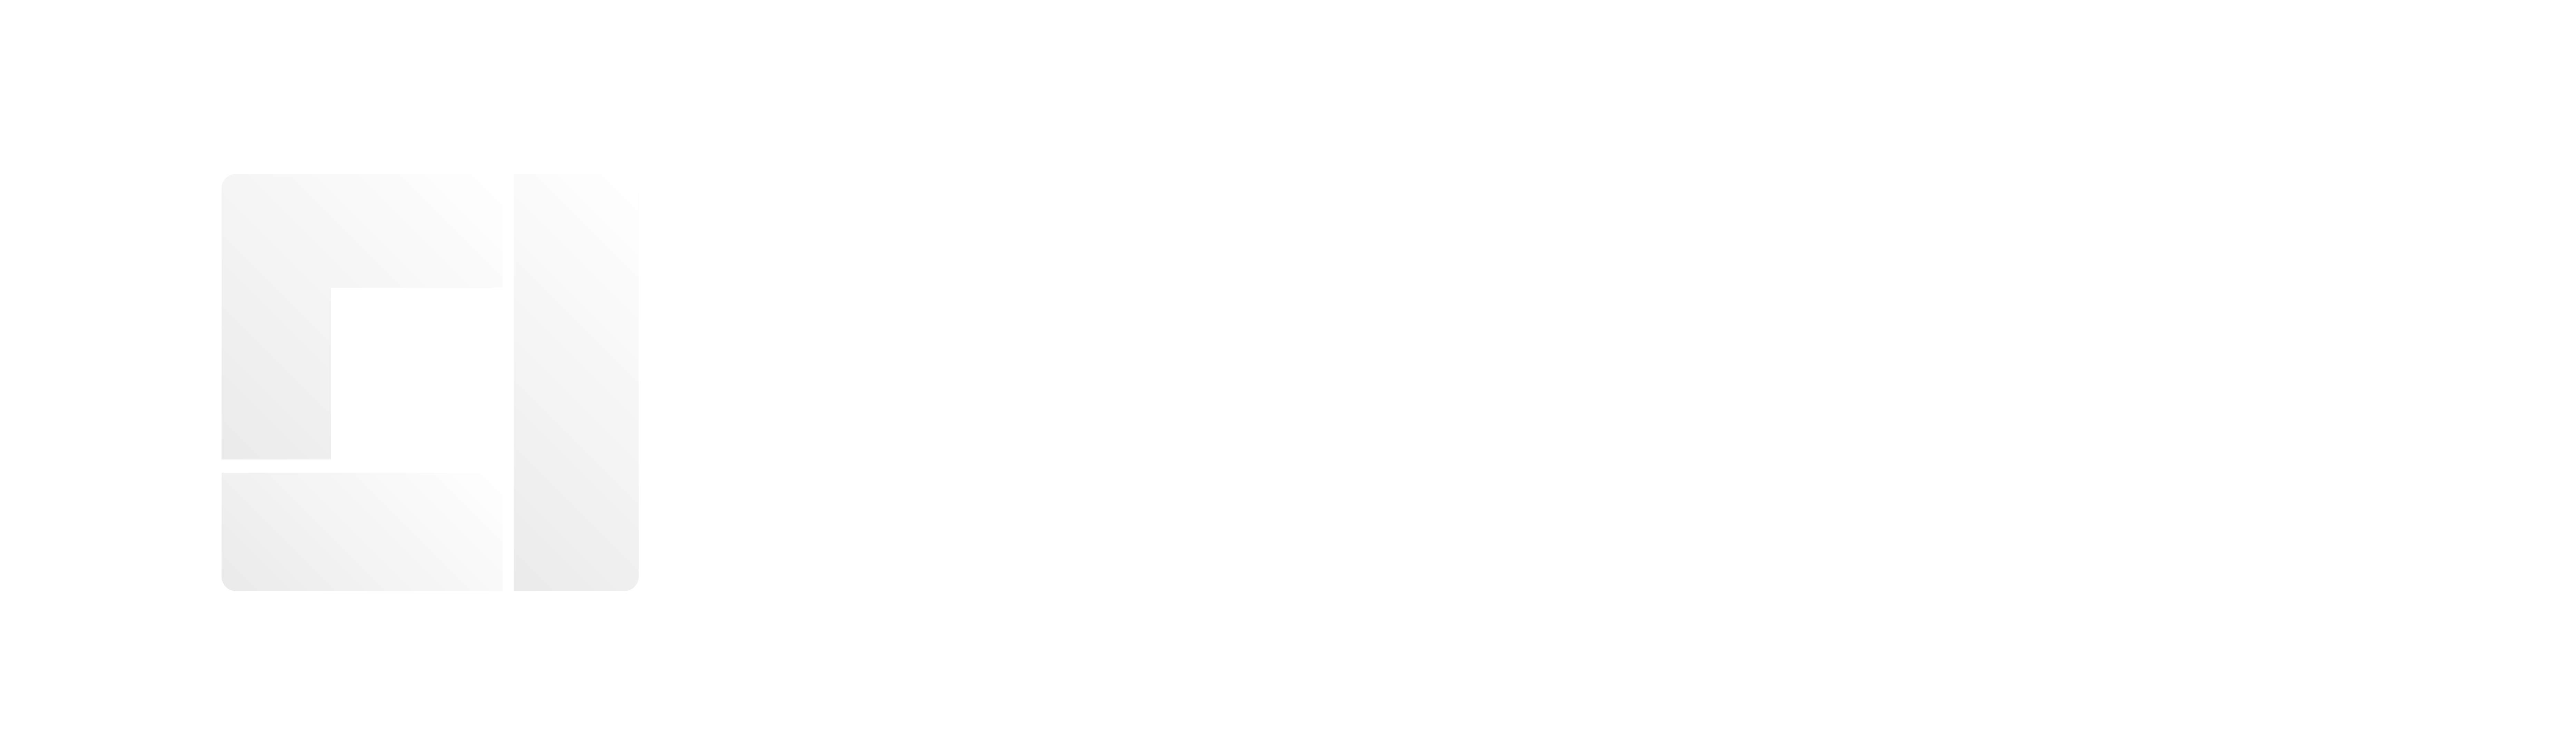 Betabox Learning K12